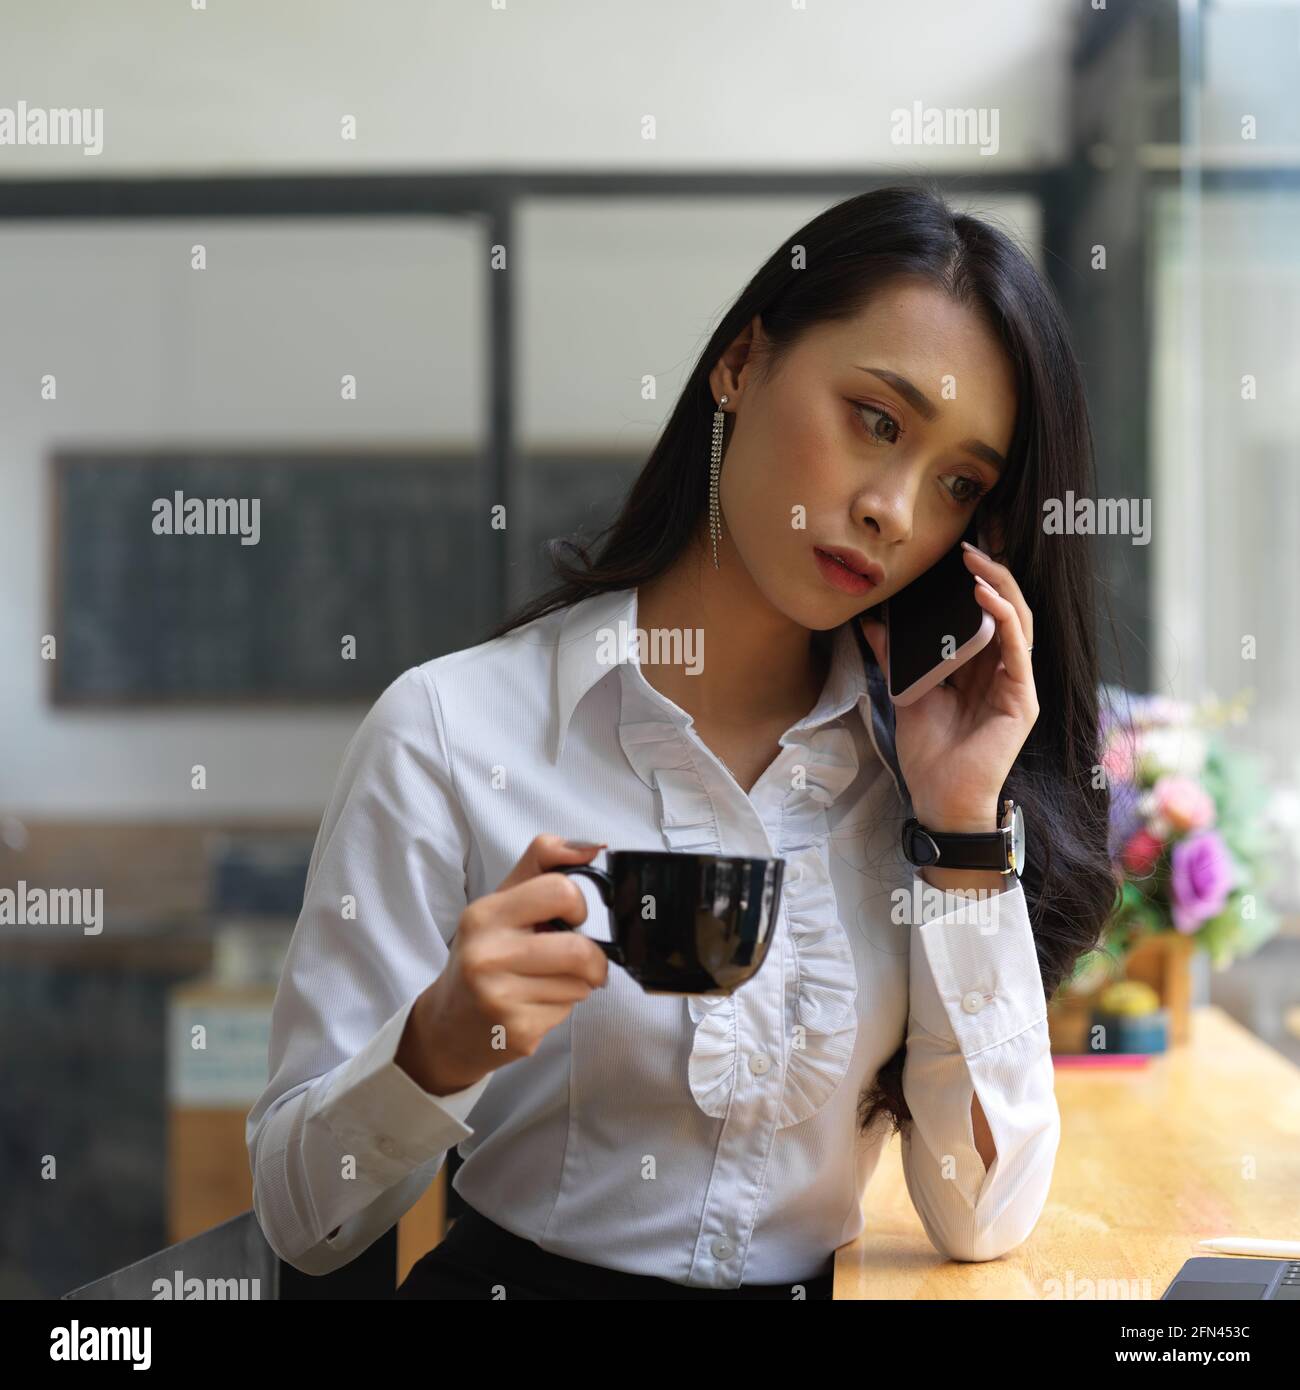 Porträt einer Frau, die am Telefon telefoniert, während sie Kaffee trinkt In cafa Stockfoto